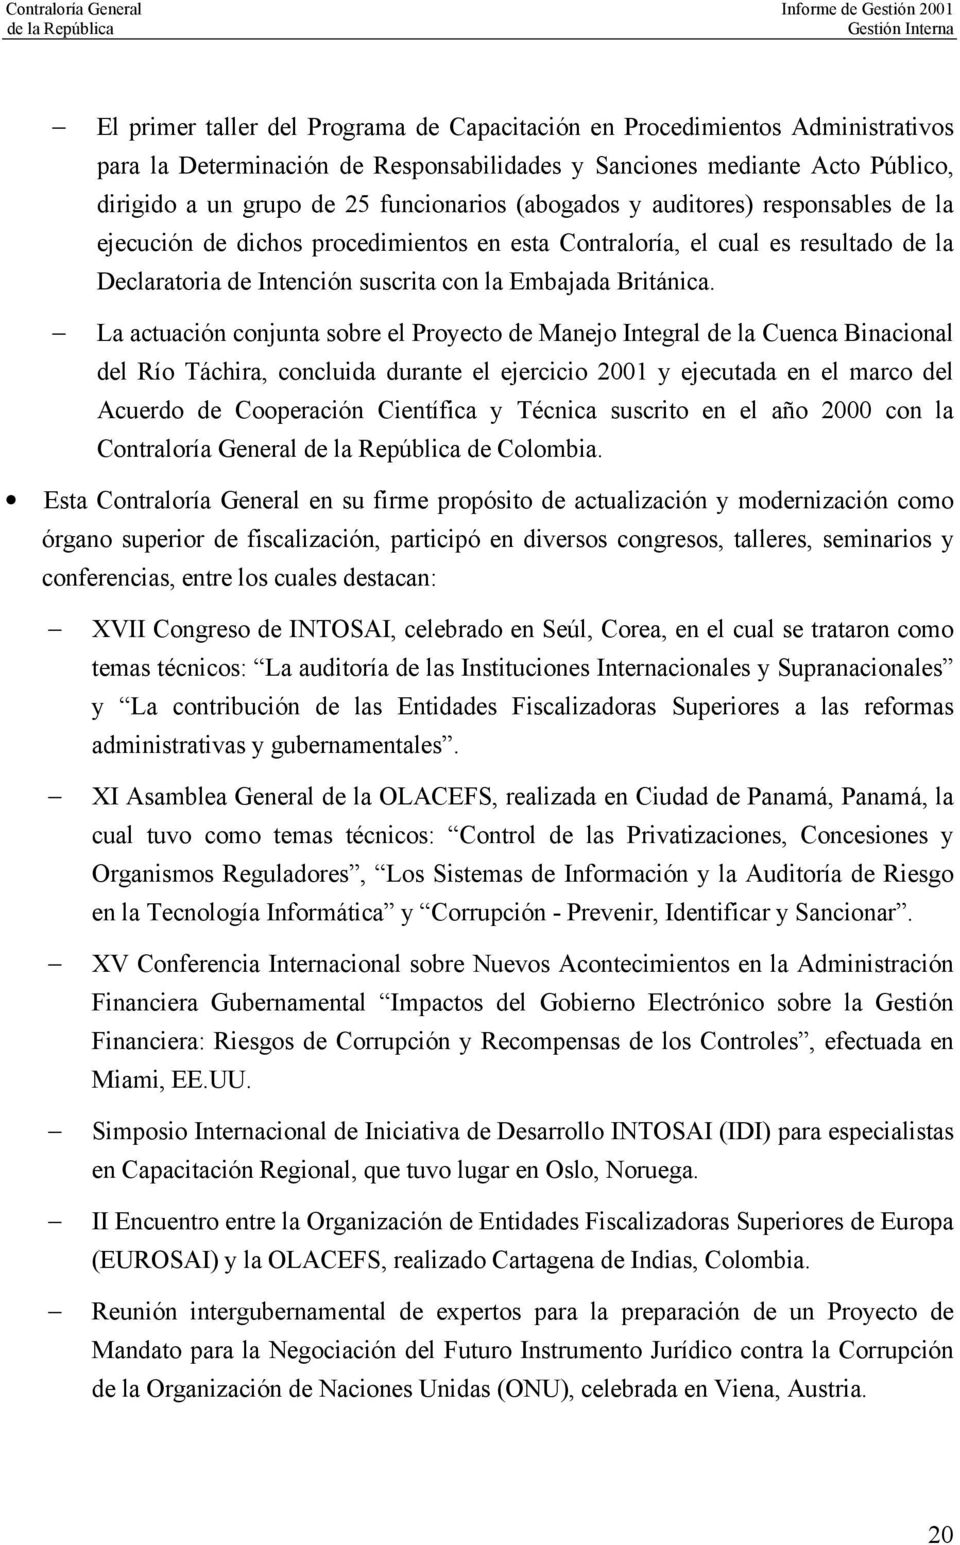 La actuación conjunta sobre el Proyecto de Manejo Integral de la Cuenca Binacional del Río Táchira, concluida durante el ejercicio 2001 y ejecutada en el marco del Acuerdo de Cooperación Científica y